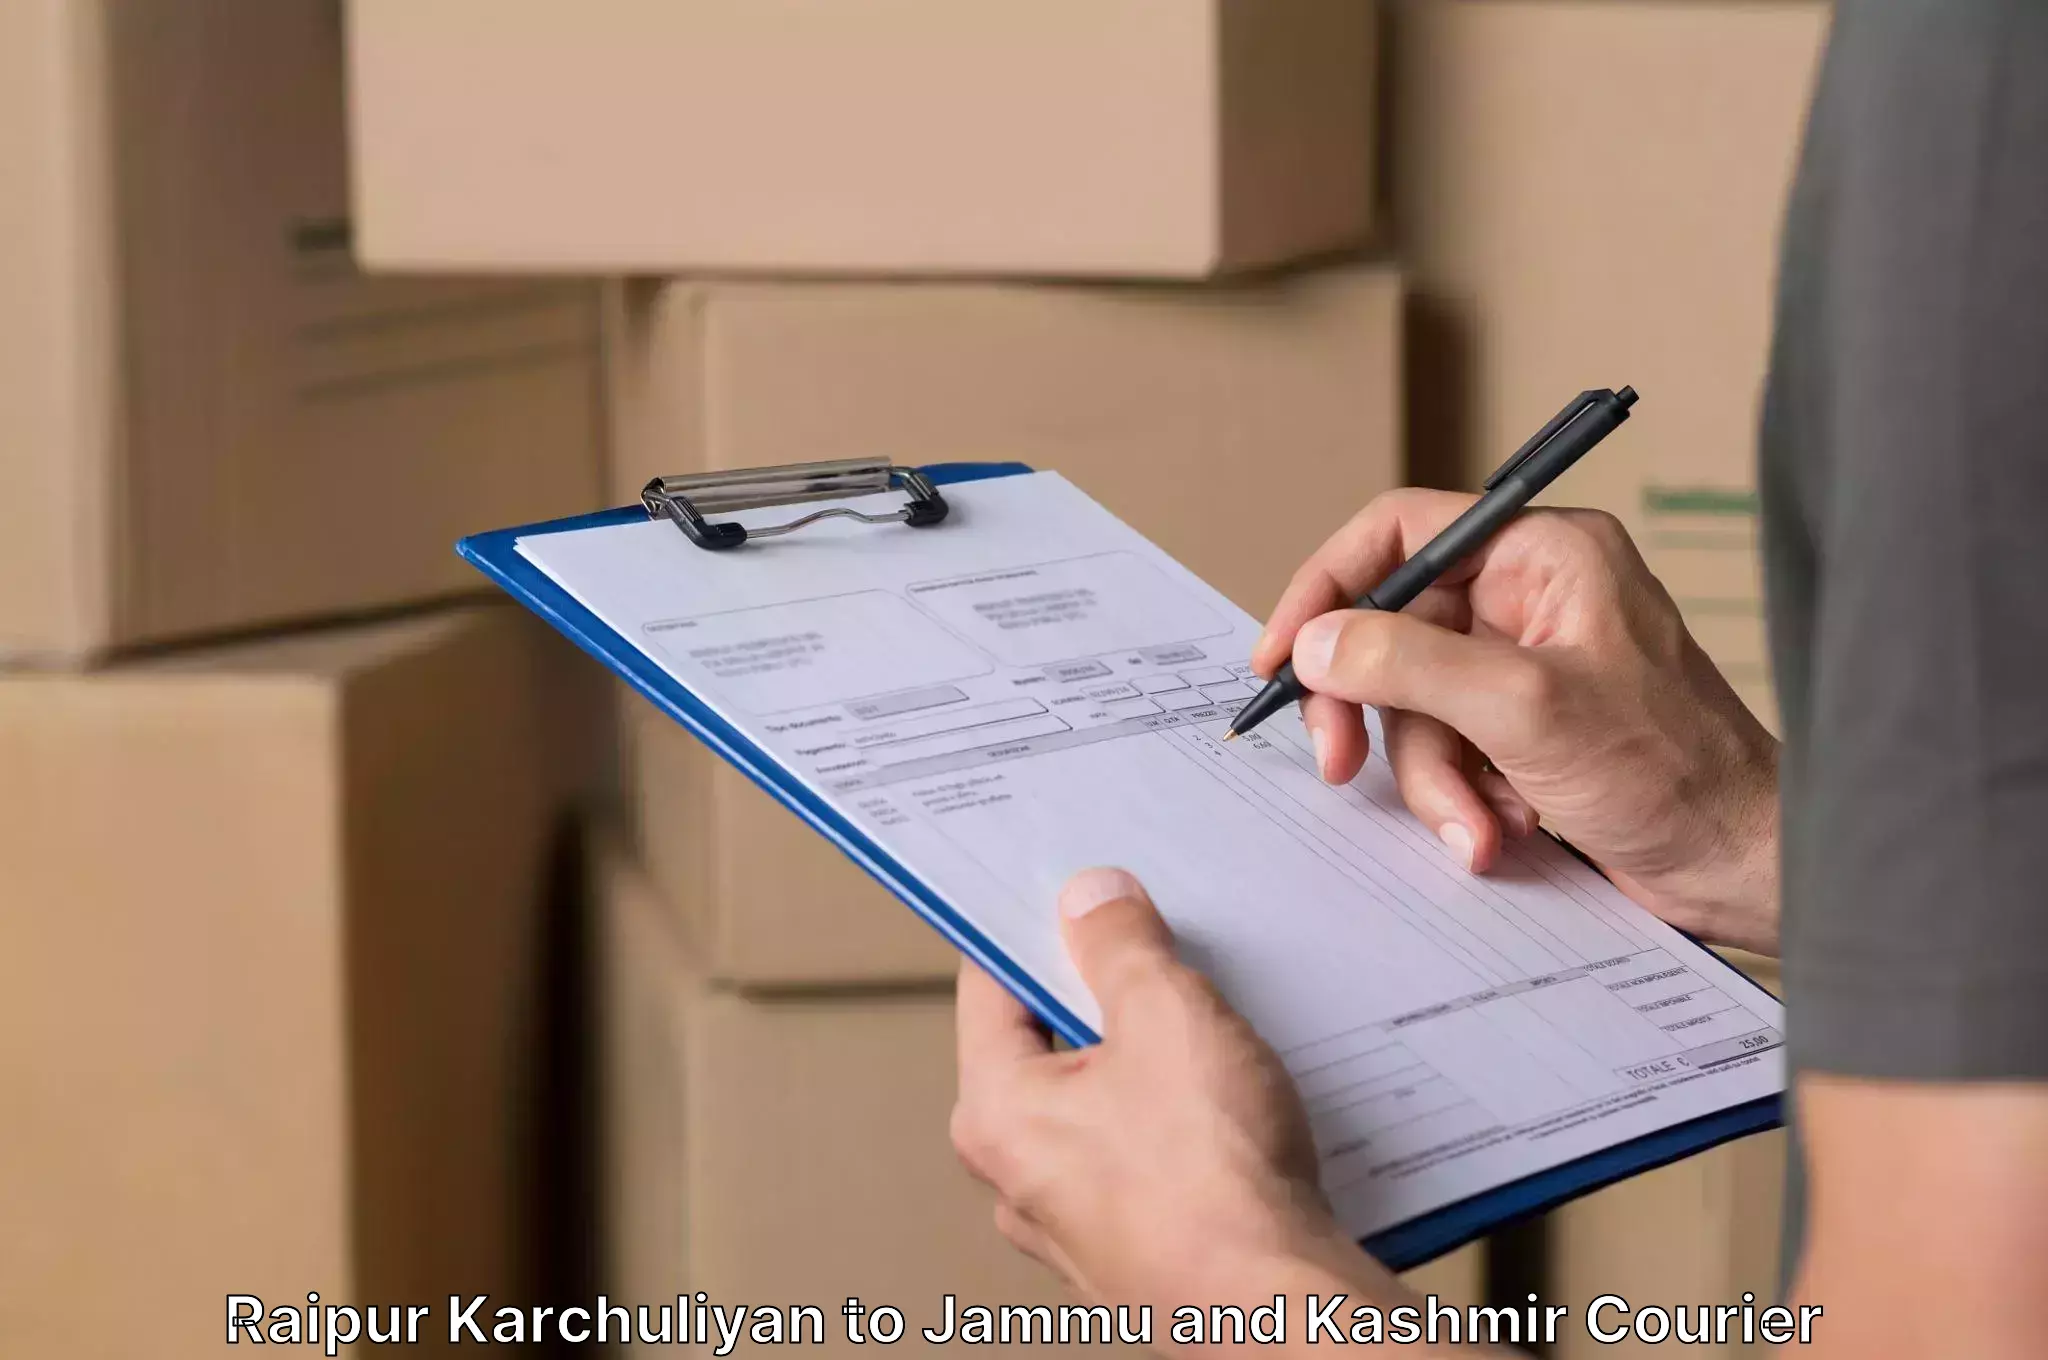 Efficient moving company Raipur Karchuliyan to Ramban